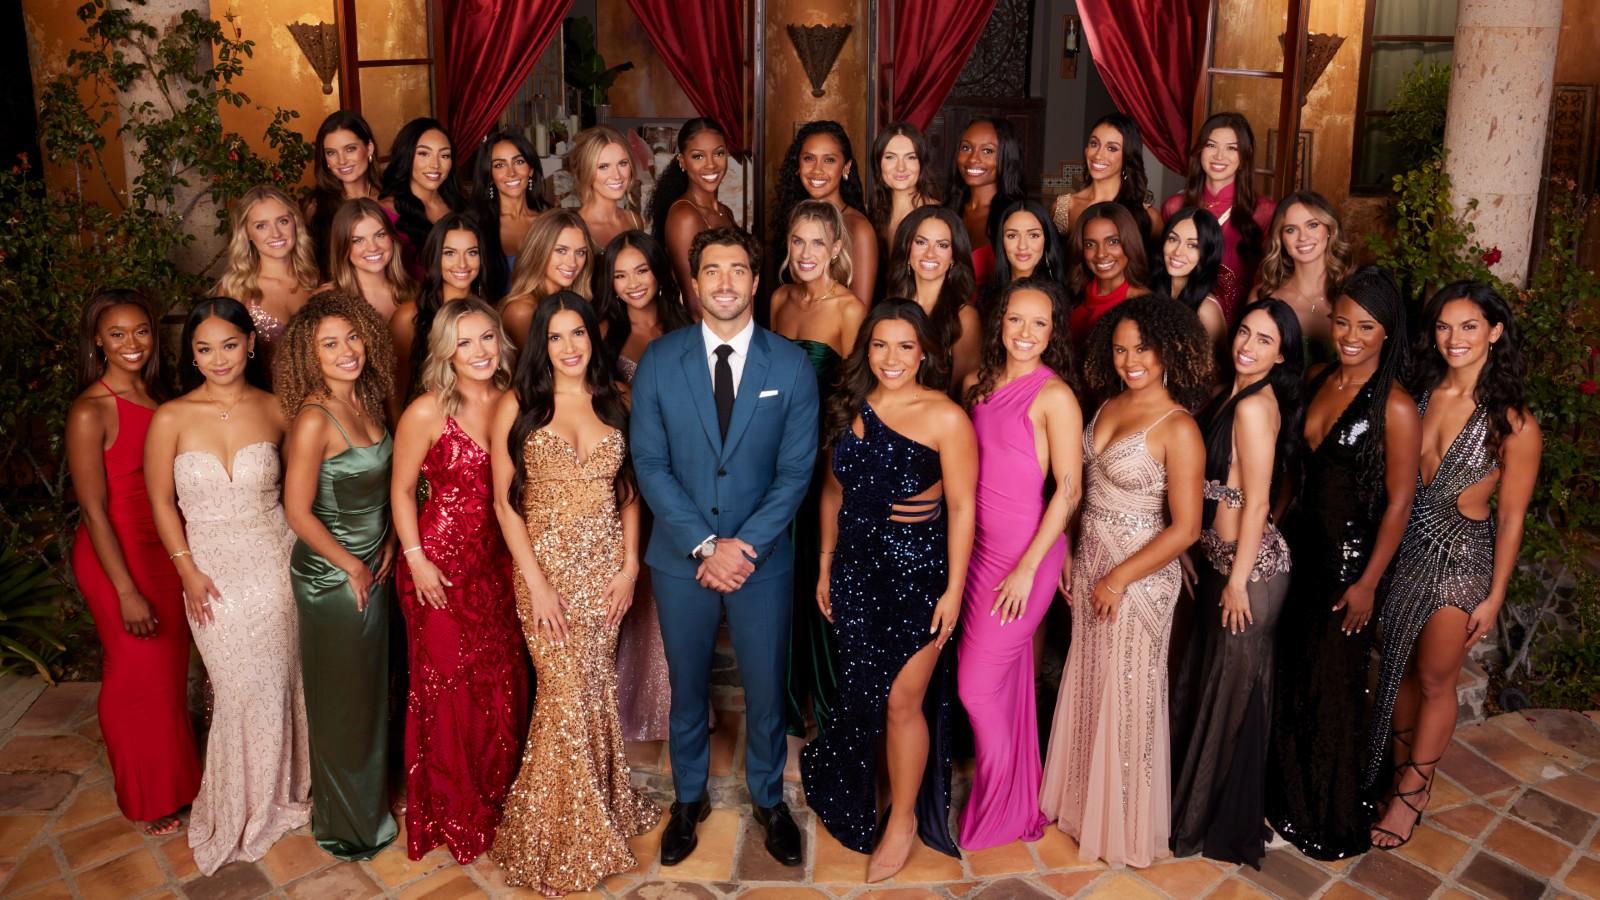 The Bachelor season 28 contestants